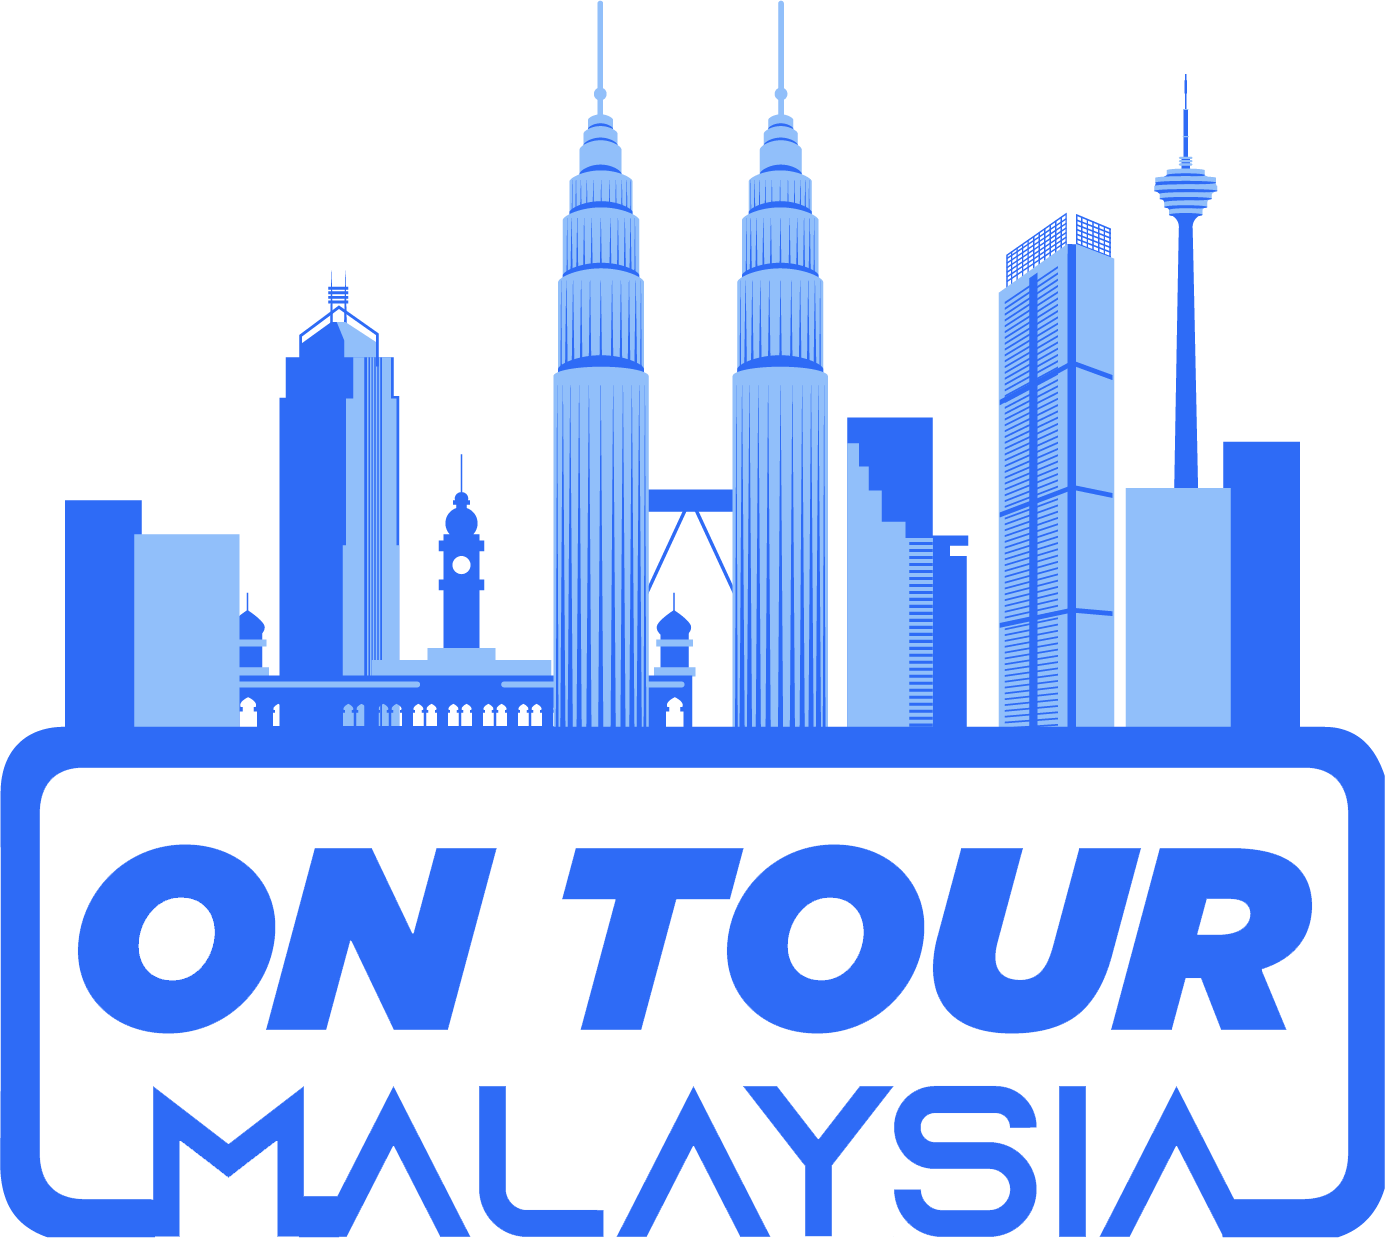 On tour malaysia